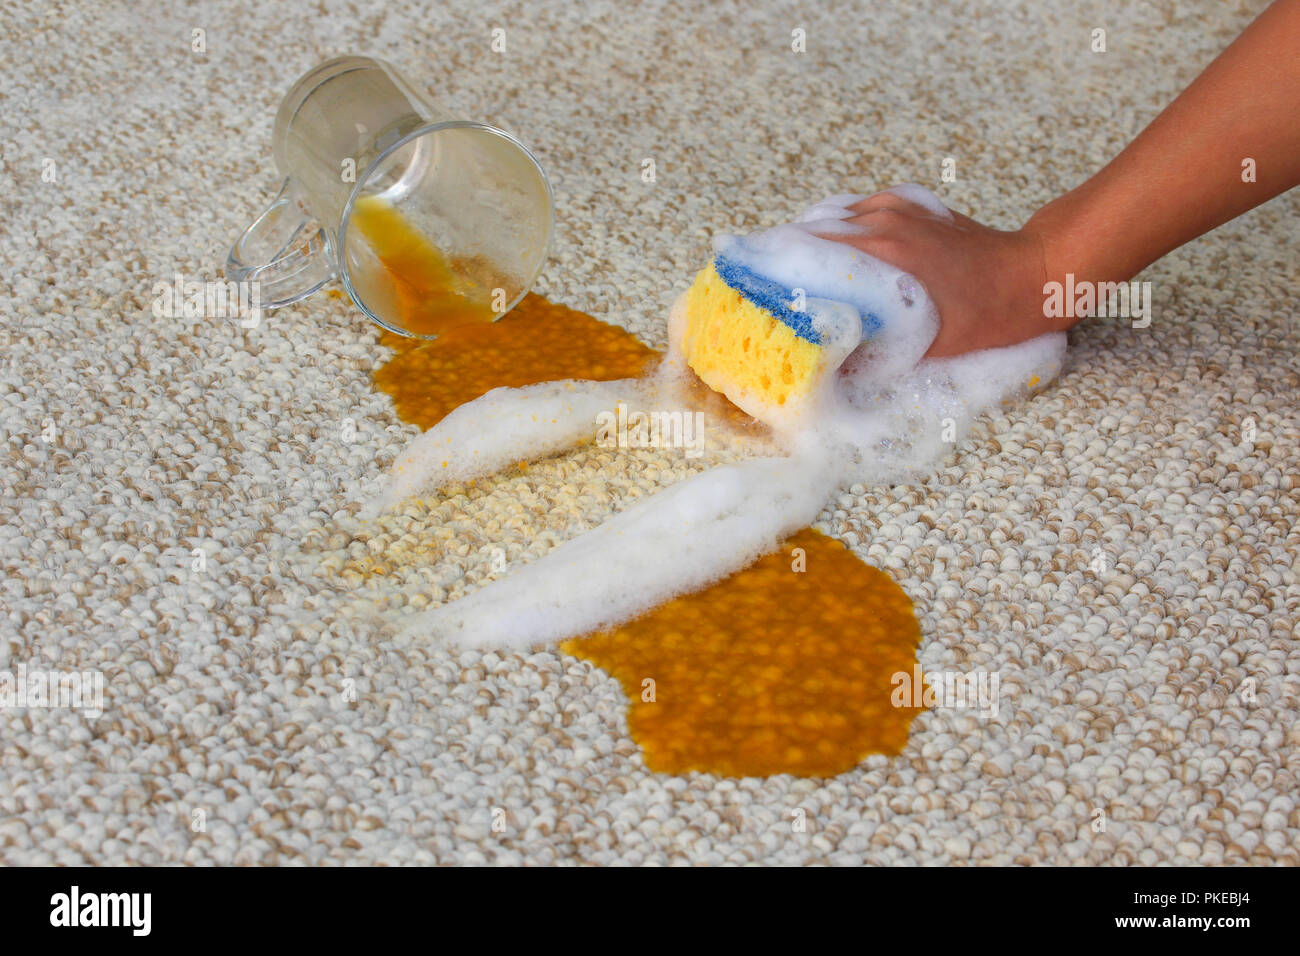 Glas Saft fiel und auf dem Boden verschüttet. Weibliche hand reinigt der  Teppich mit einem Schwamm und Spülmittel Stockfotografie - Alamy